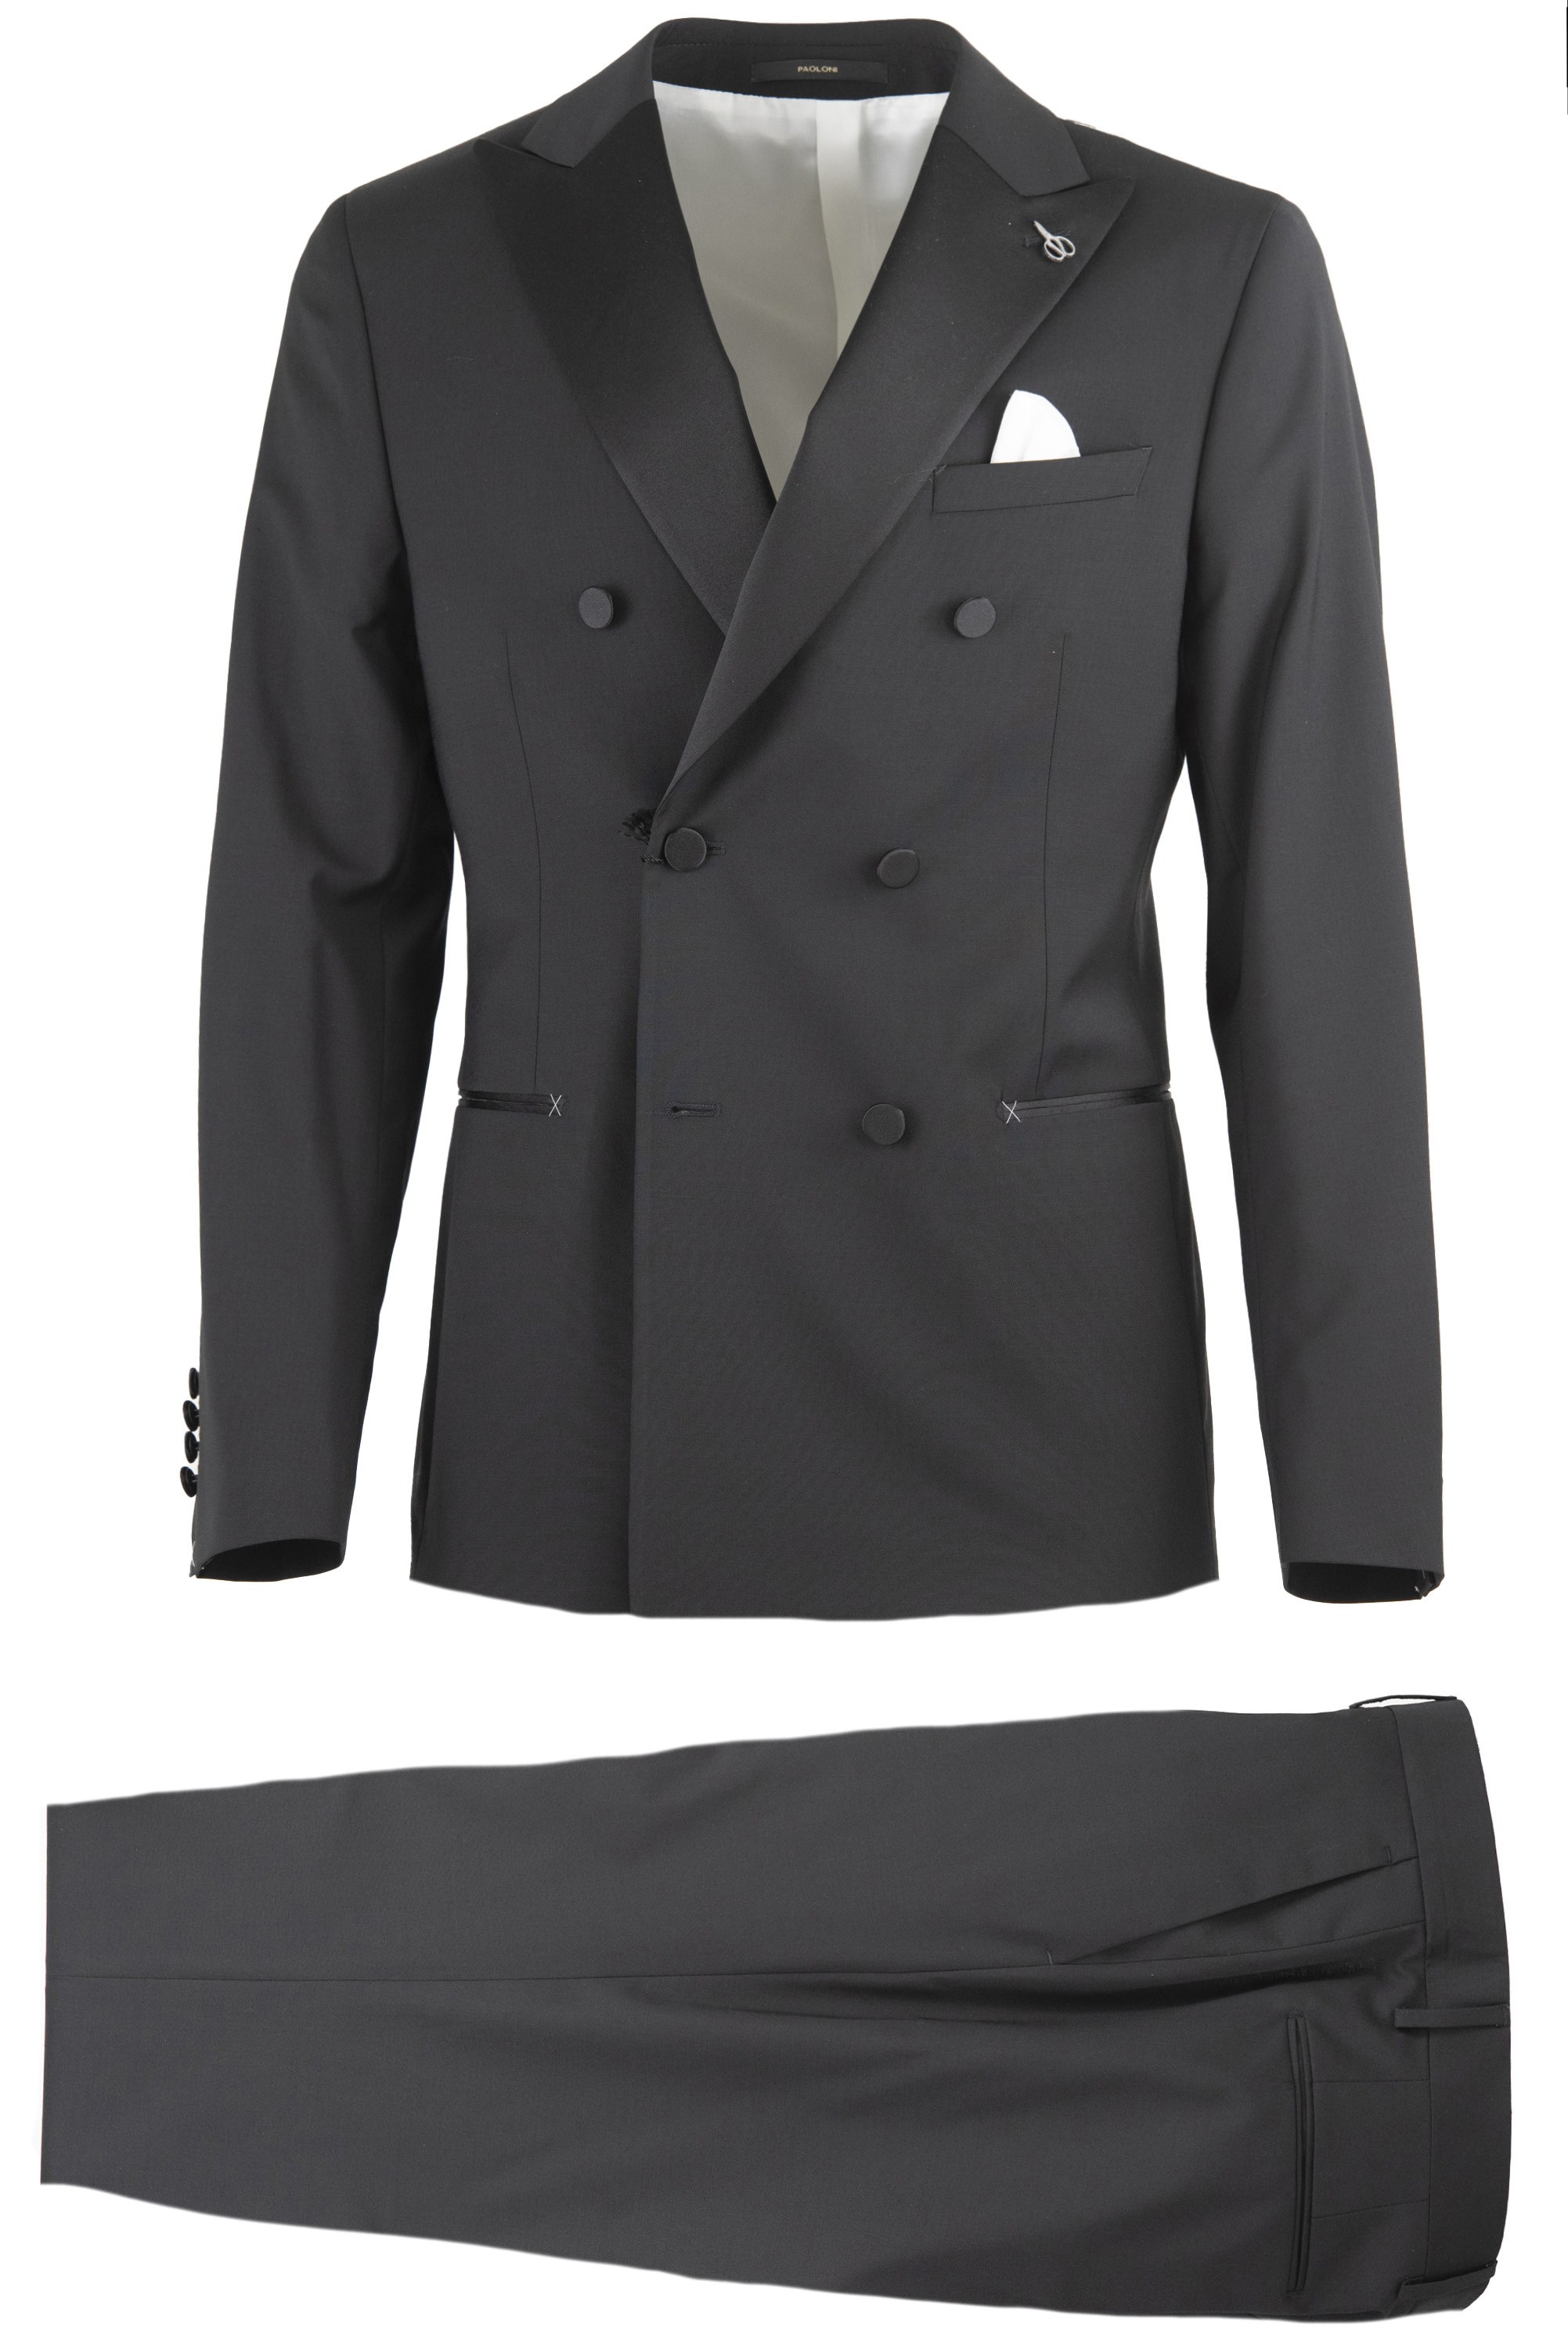 Paoloni Men's Suit 3210A498 221008 99